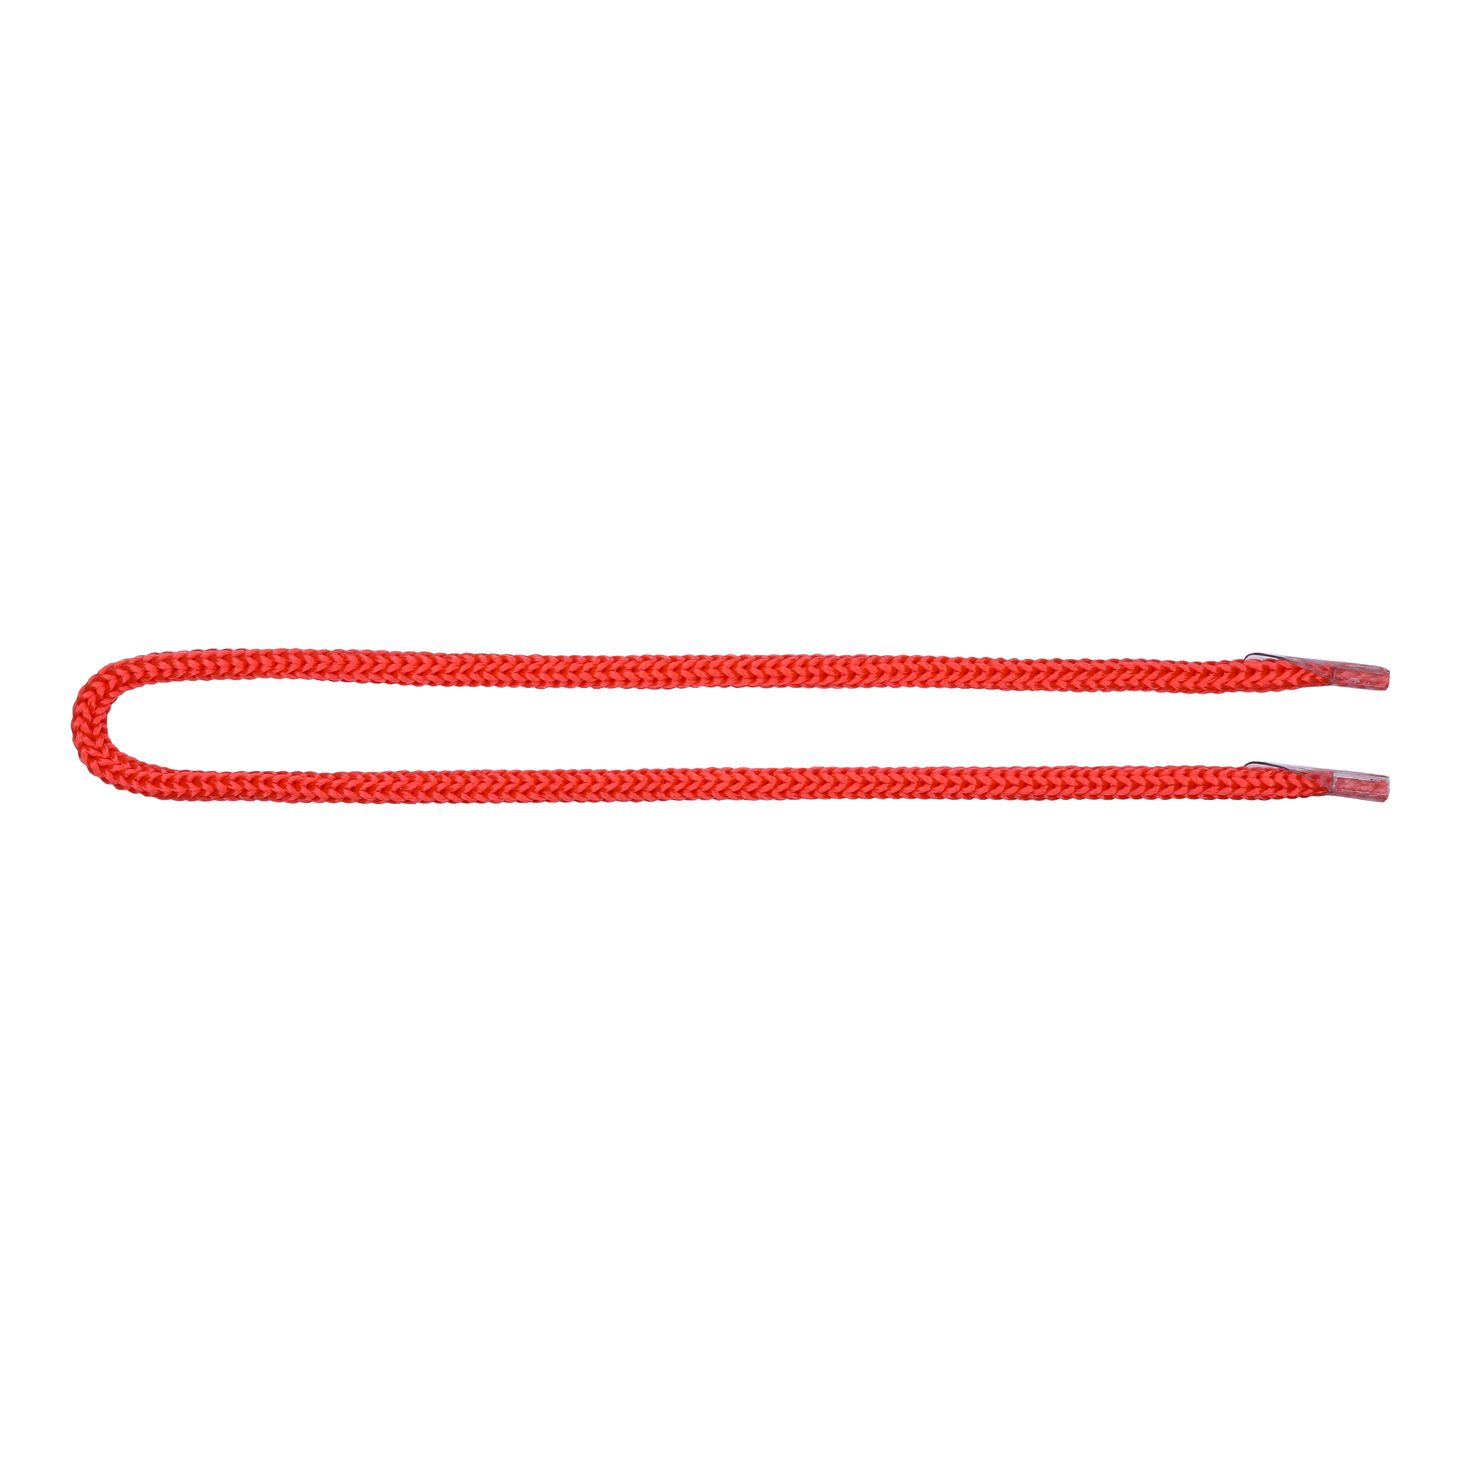 Шнурок для пакетов с крючком арт. 5В511 п/п, диам. 5 мм, дл. 35 см, № 256 ДС красный (уп. 50 пар)